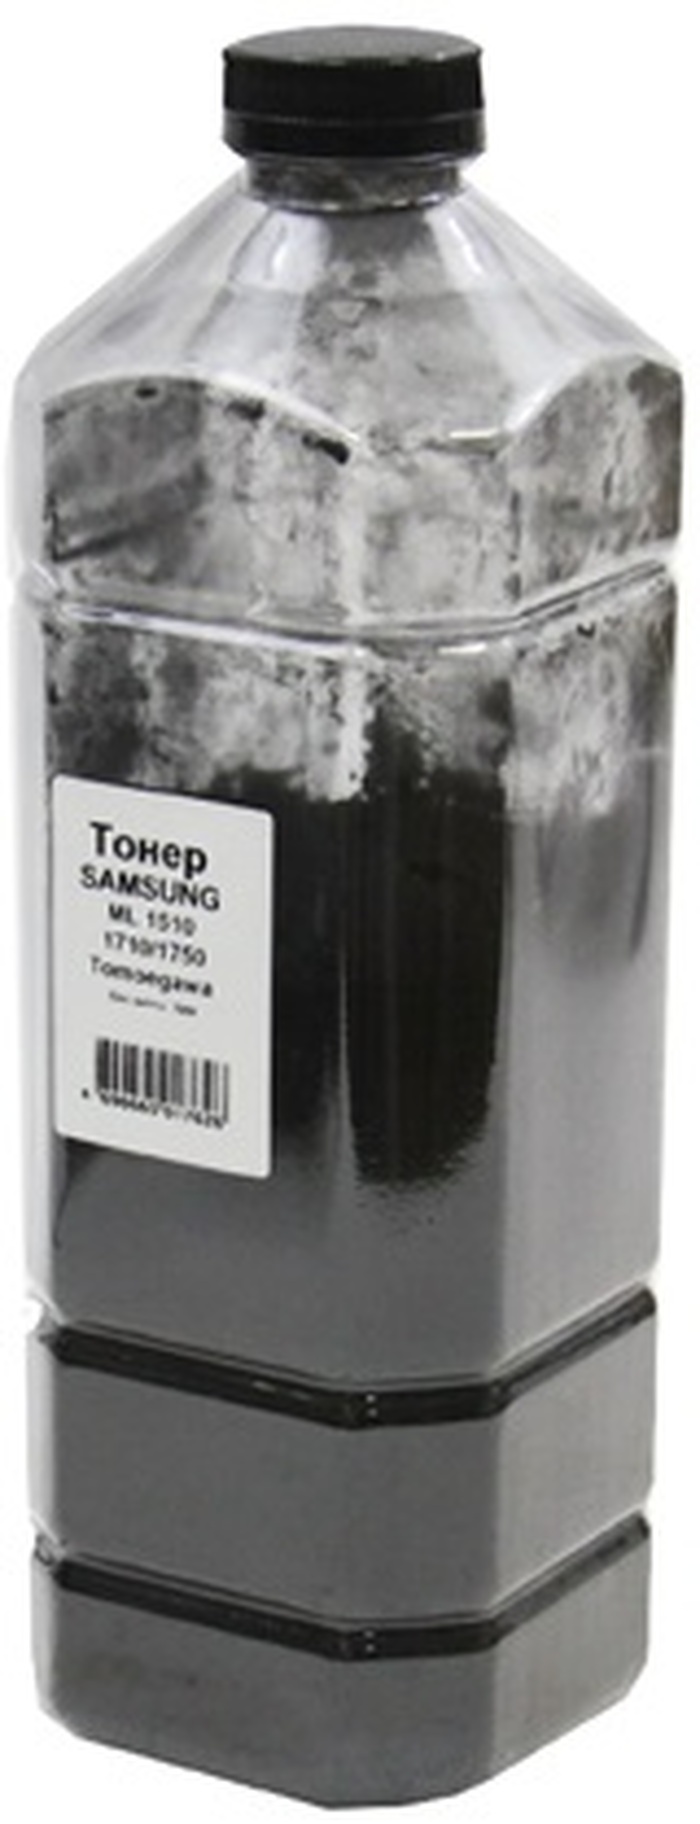 Тонер tomoegawa. Тонер Hi-Black для Samsung ml-1510/1710/1750 (Tomoegawa) канистра, 700 гр.. Toner Tomoegawa TN-K-tk-BK-500. Toner Tomoegawa TN-K-tk-BK-500 10-1-1-1. Тонер Samsung ml1710/1750 (109r00725).